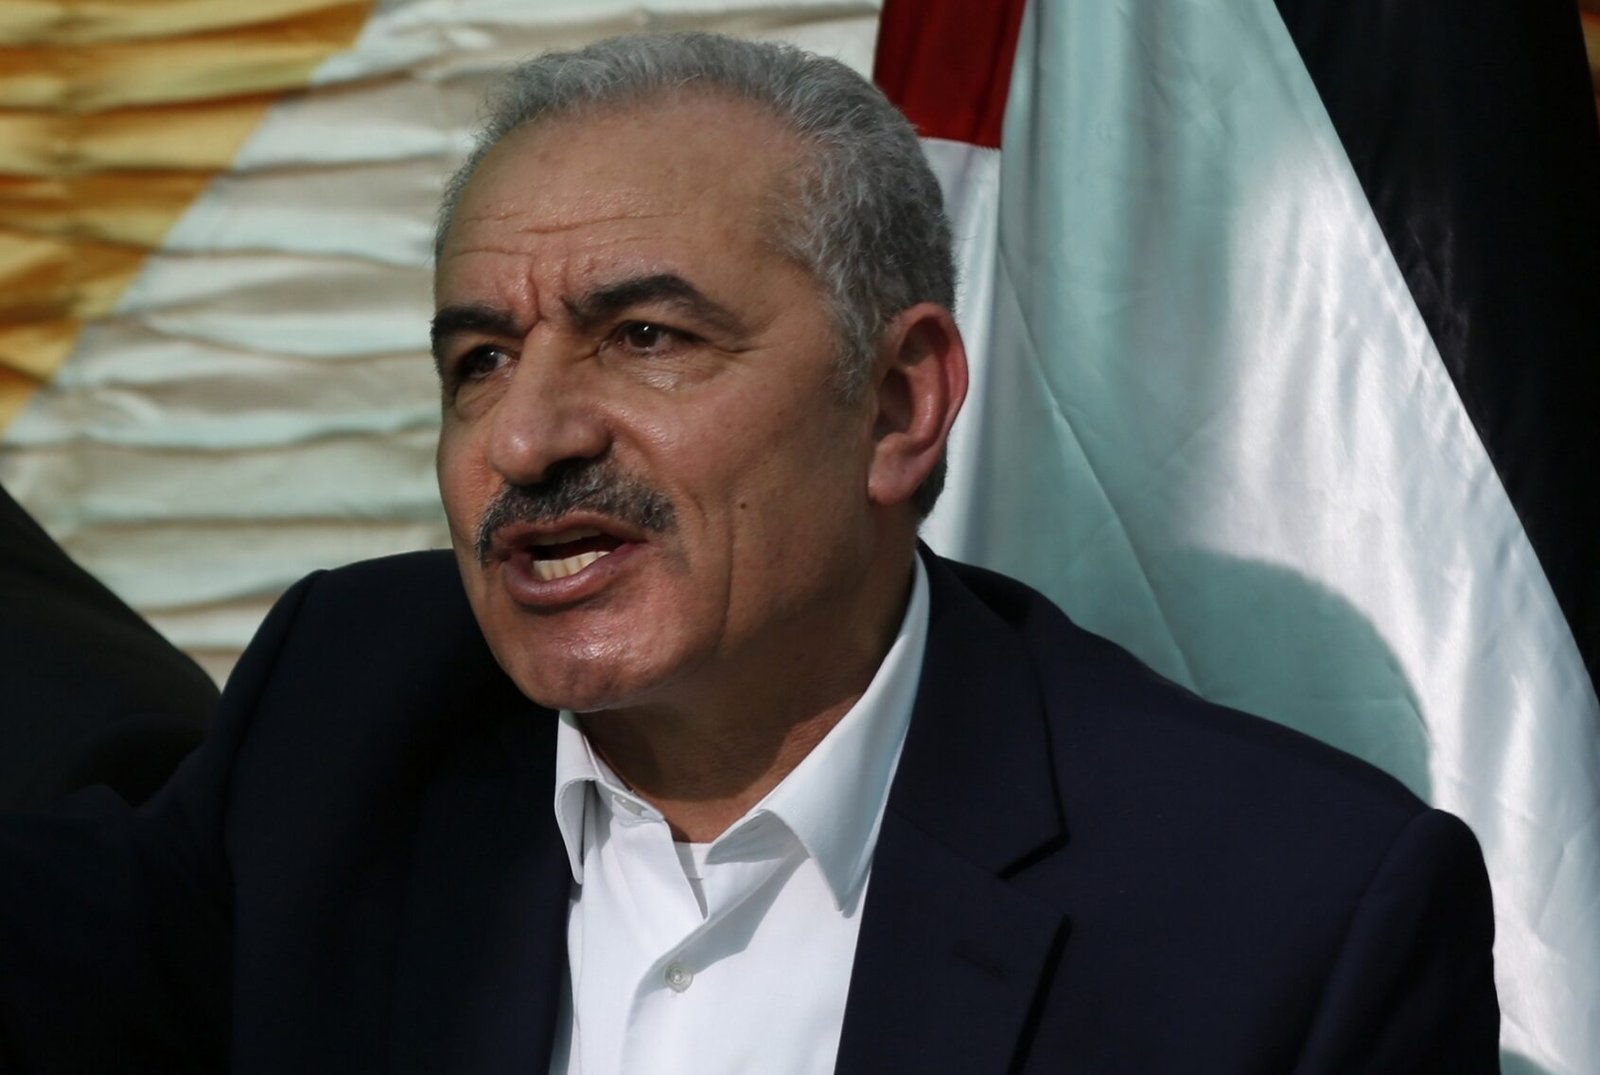 Palestinian Prime Minister Mohammed Ishtaye